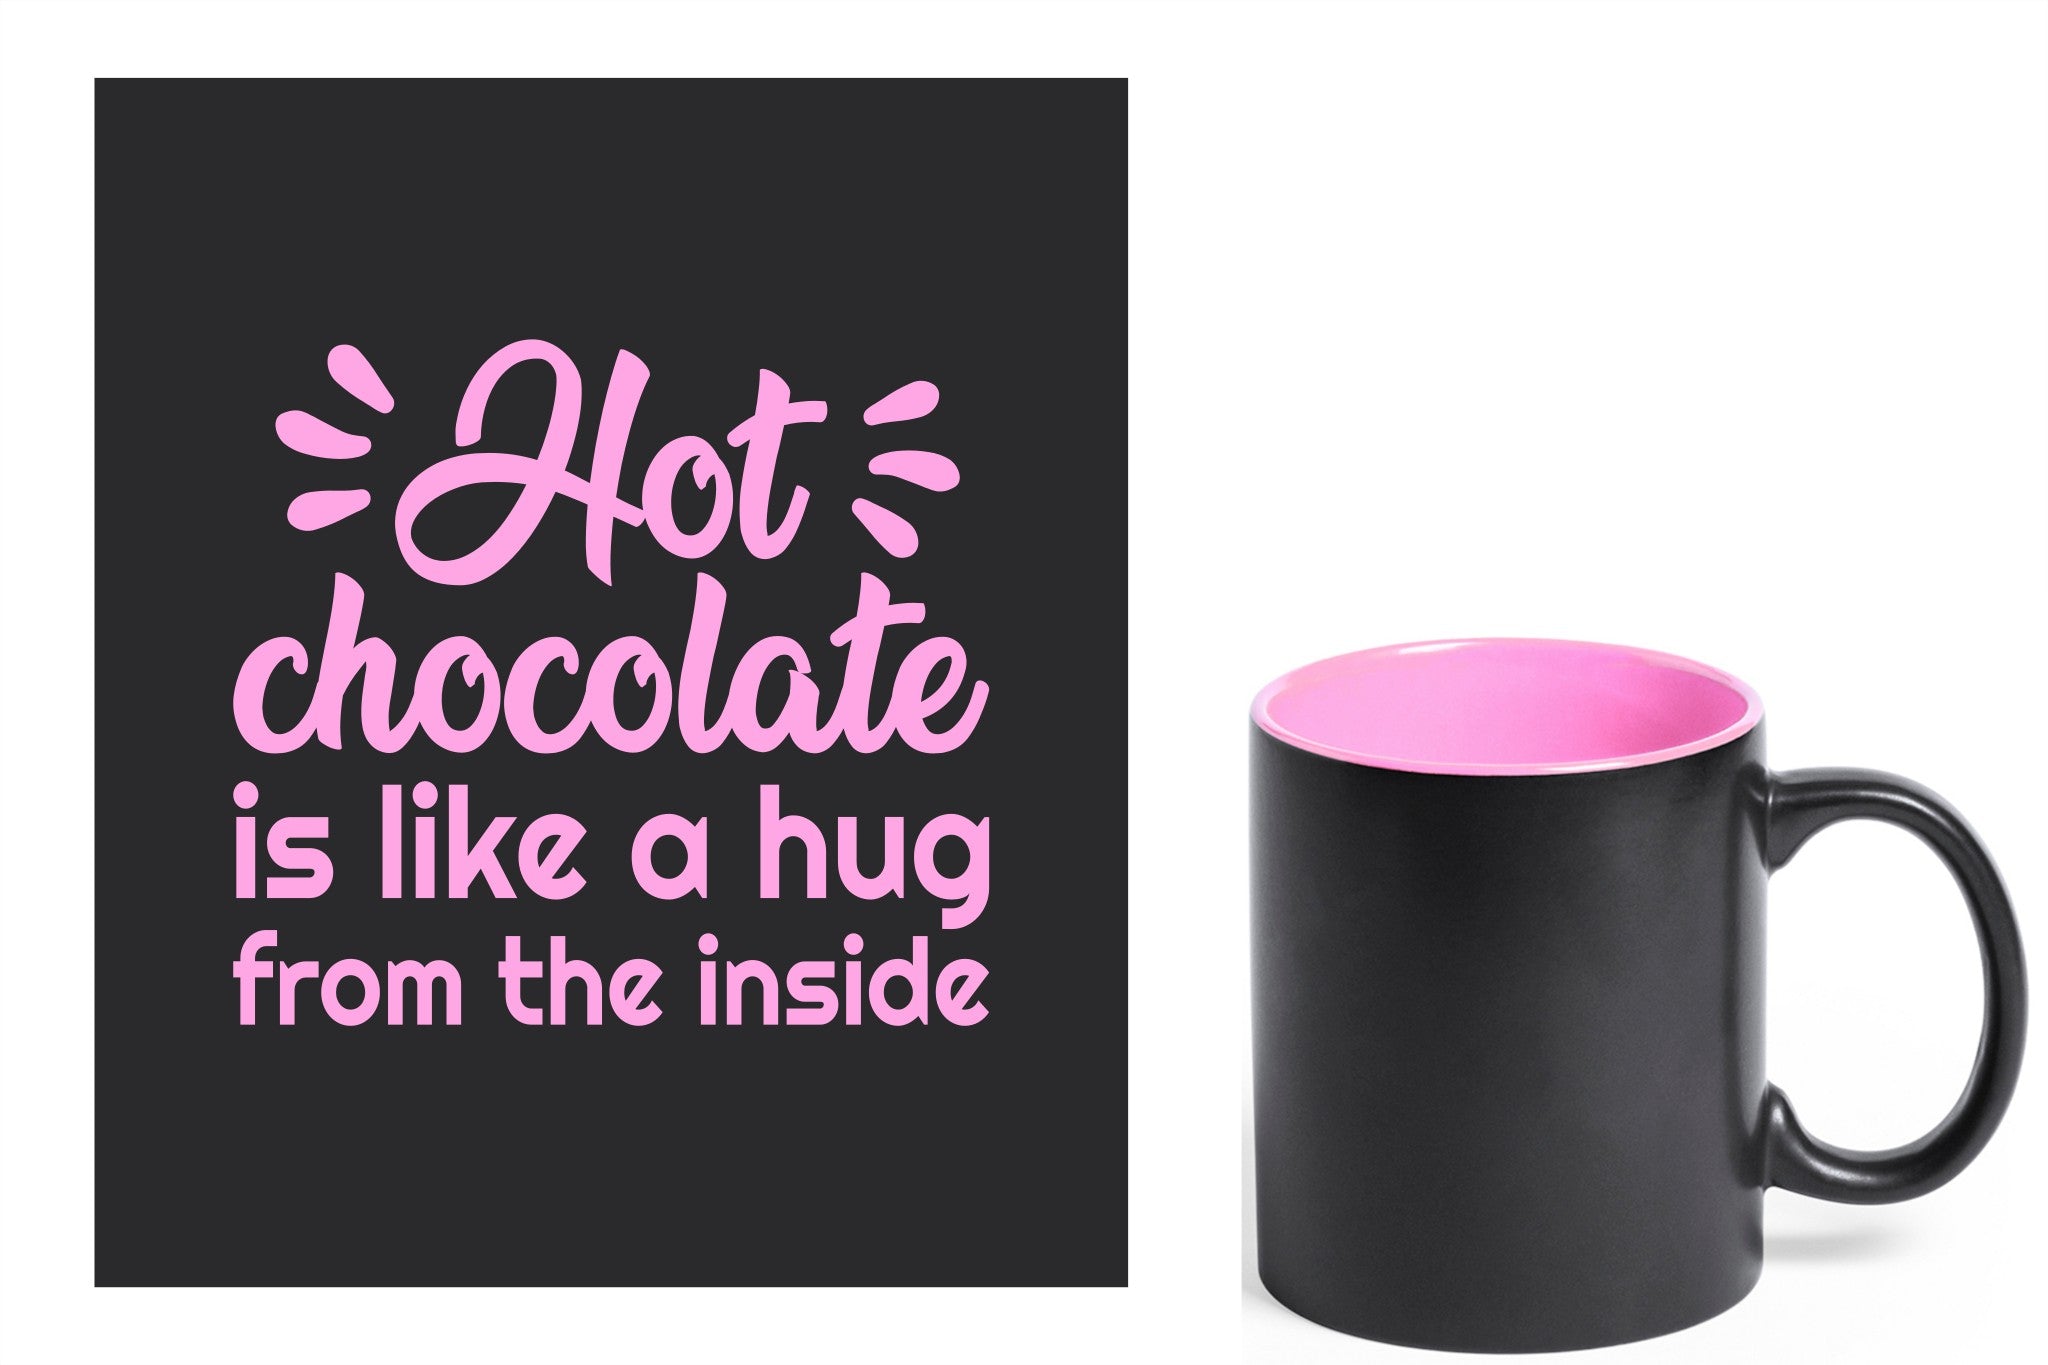 zwarte keramische mok met roze gravure  'Hot chocolate is like a hug from the inside'.